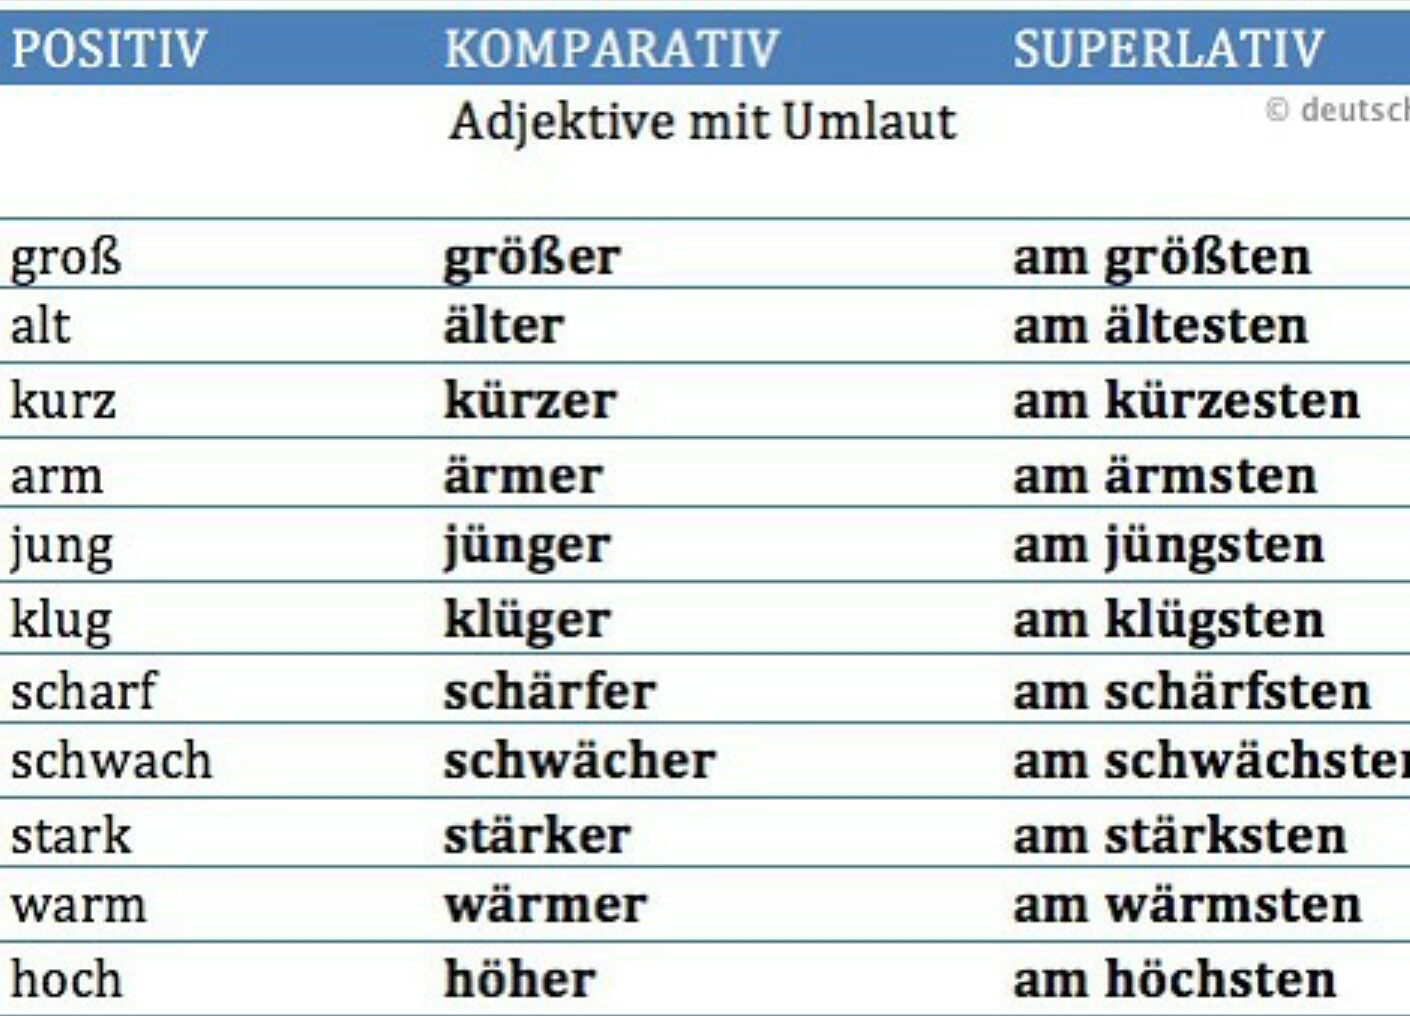 Am deutsch. Komparativ und superlativ в немецком языке. Positive Comparative Superlative немецкий. Степени сравнения прилагательных в немецком языке. Степени сравнения прилагательных в немецком языке таблица.